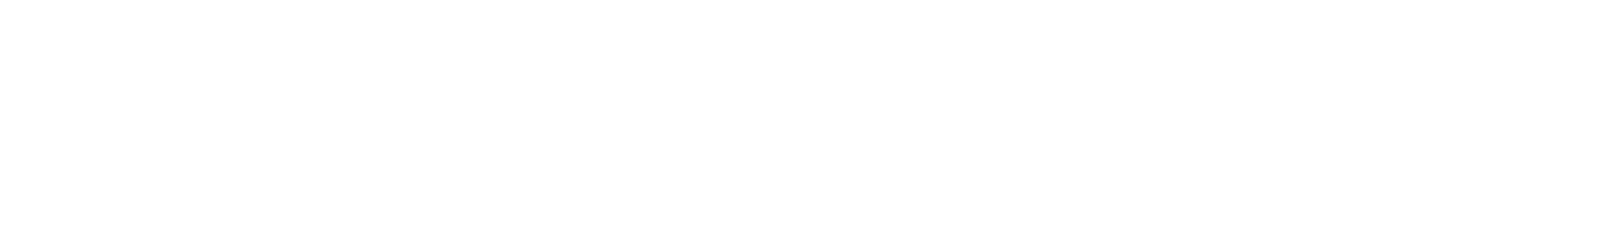 Z Holdings
 logo large for dark backgrounds (transparent PNG)